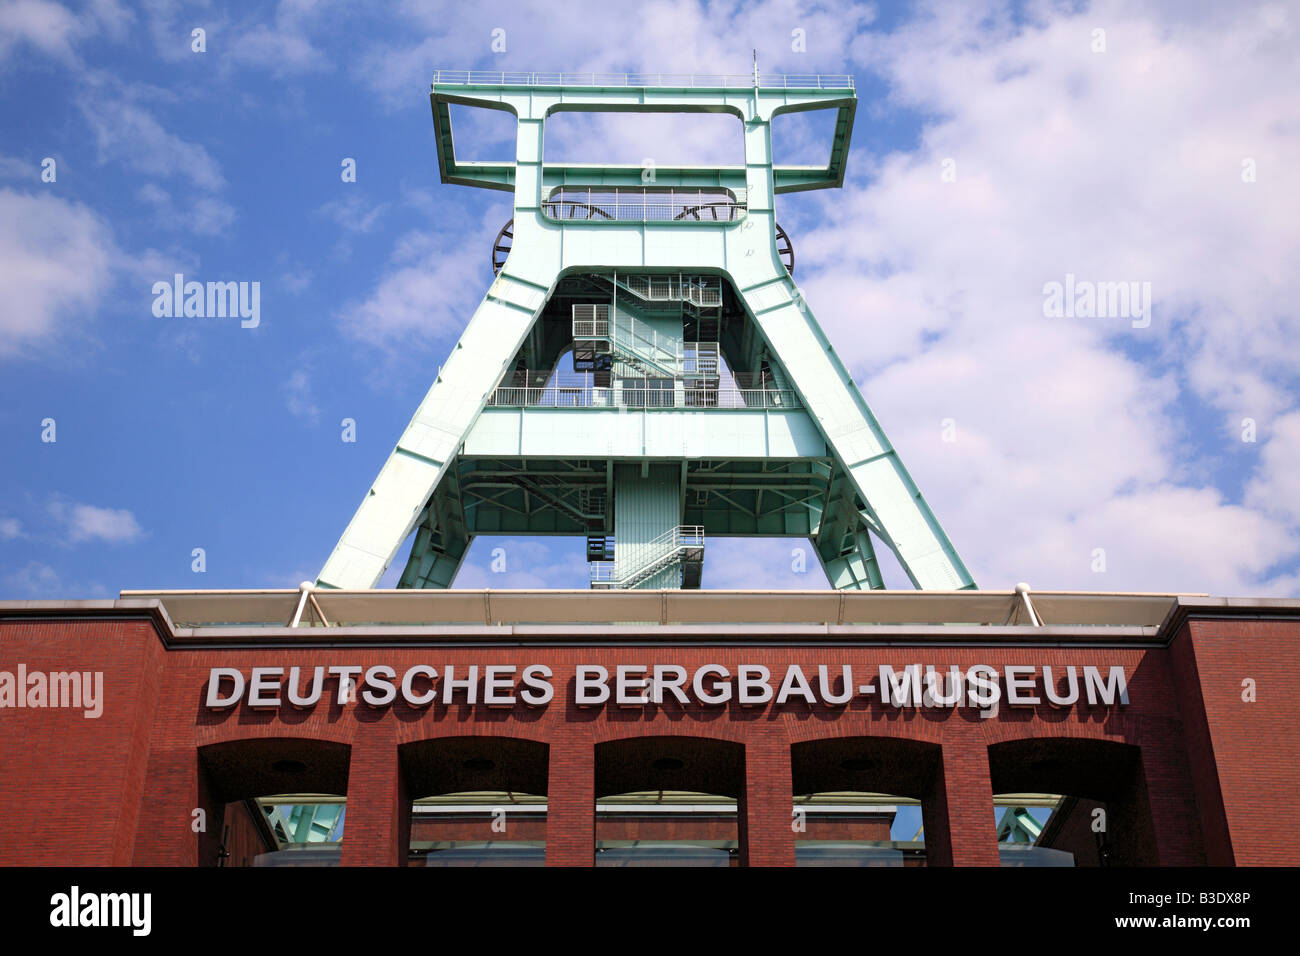 Route der Industriekultur, Deutsches Bergbau-Museum, Foerderturm der ehemaligen Zeche Germania in Dortmund-Marten, Bochum, Ruhrgebiet, NRW Stock Photo